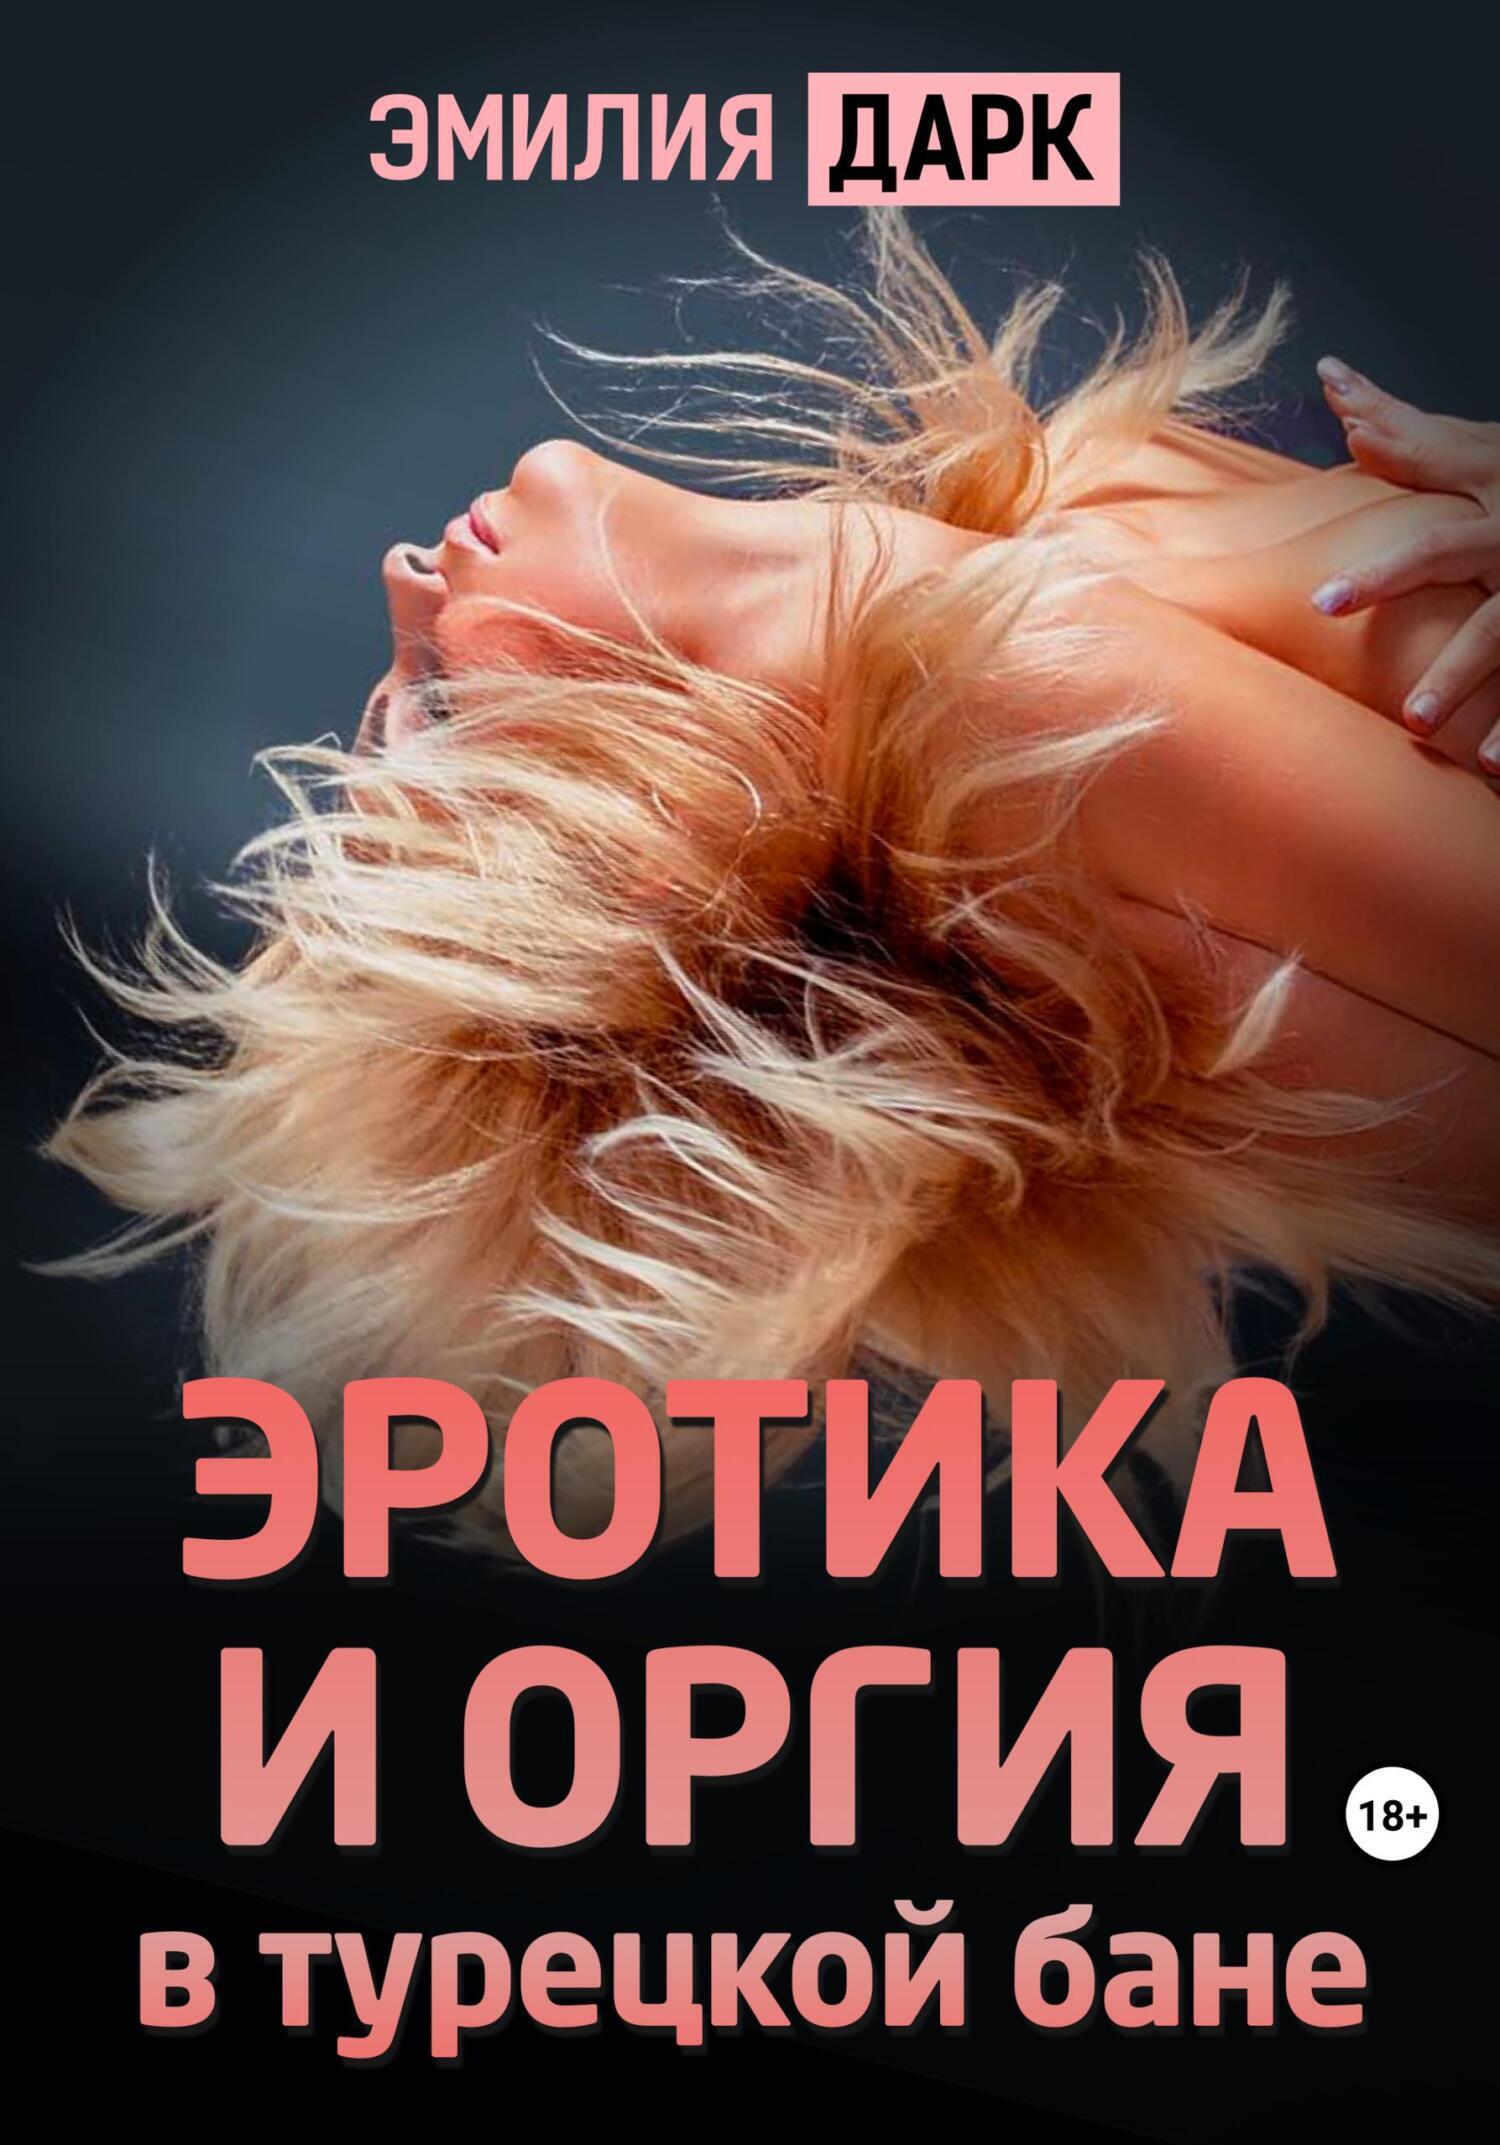 Эротика и оргия в турецкой бане, Эмилия Дарк – скачать книгу fb2, epub, pdf  на ЛитРес